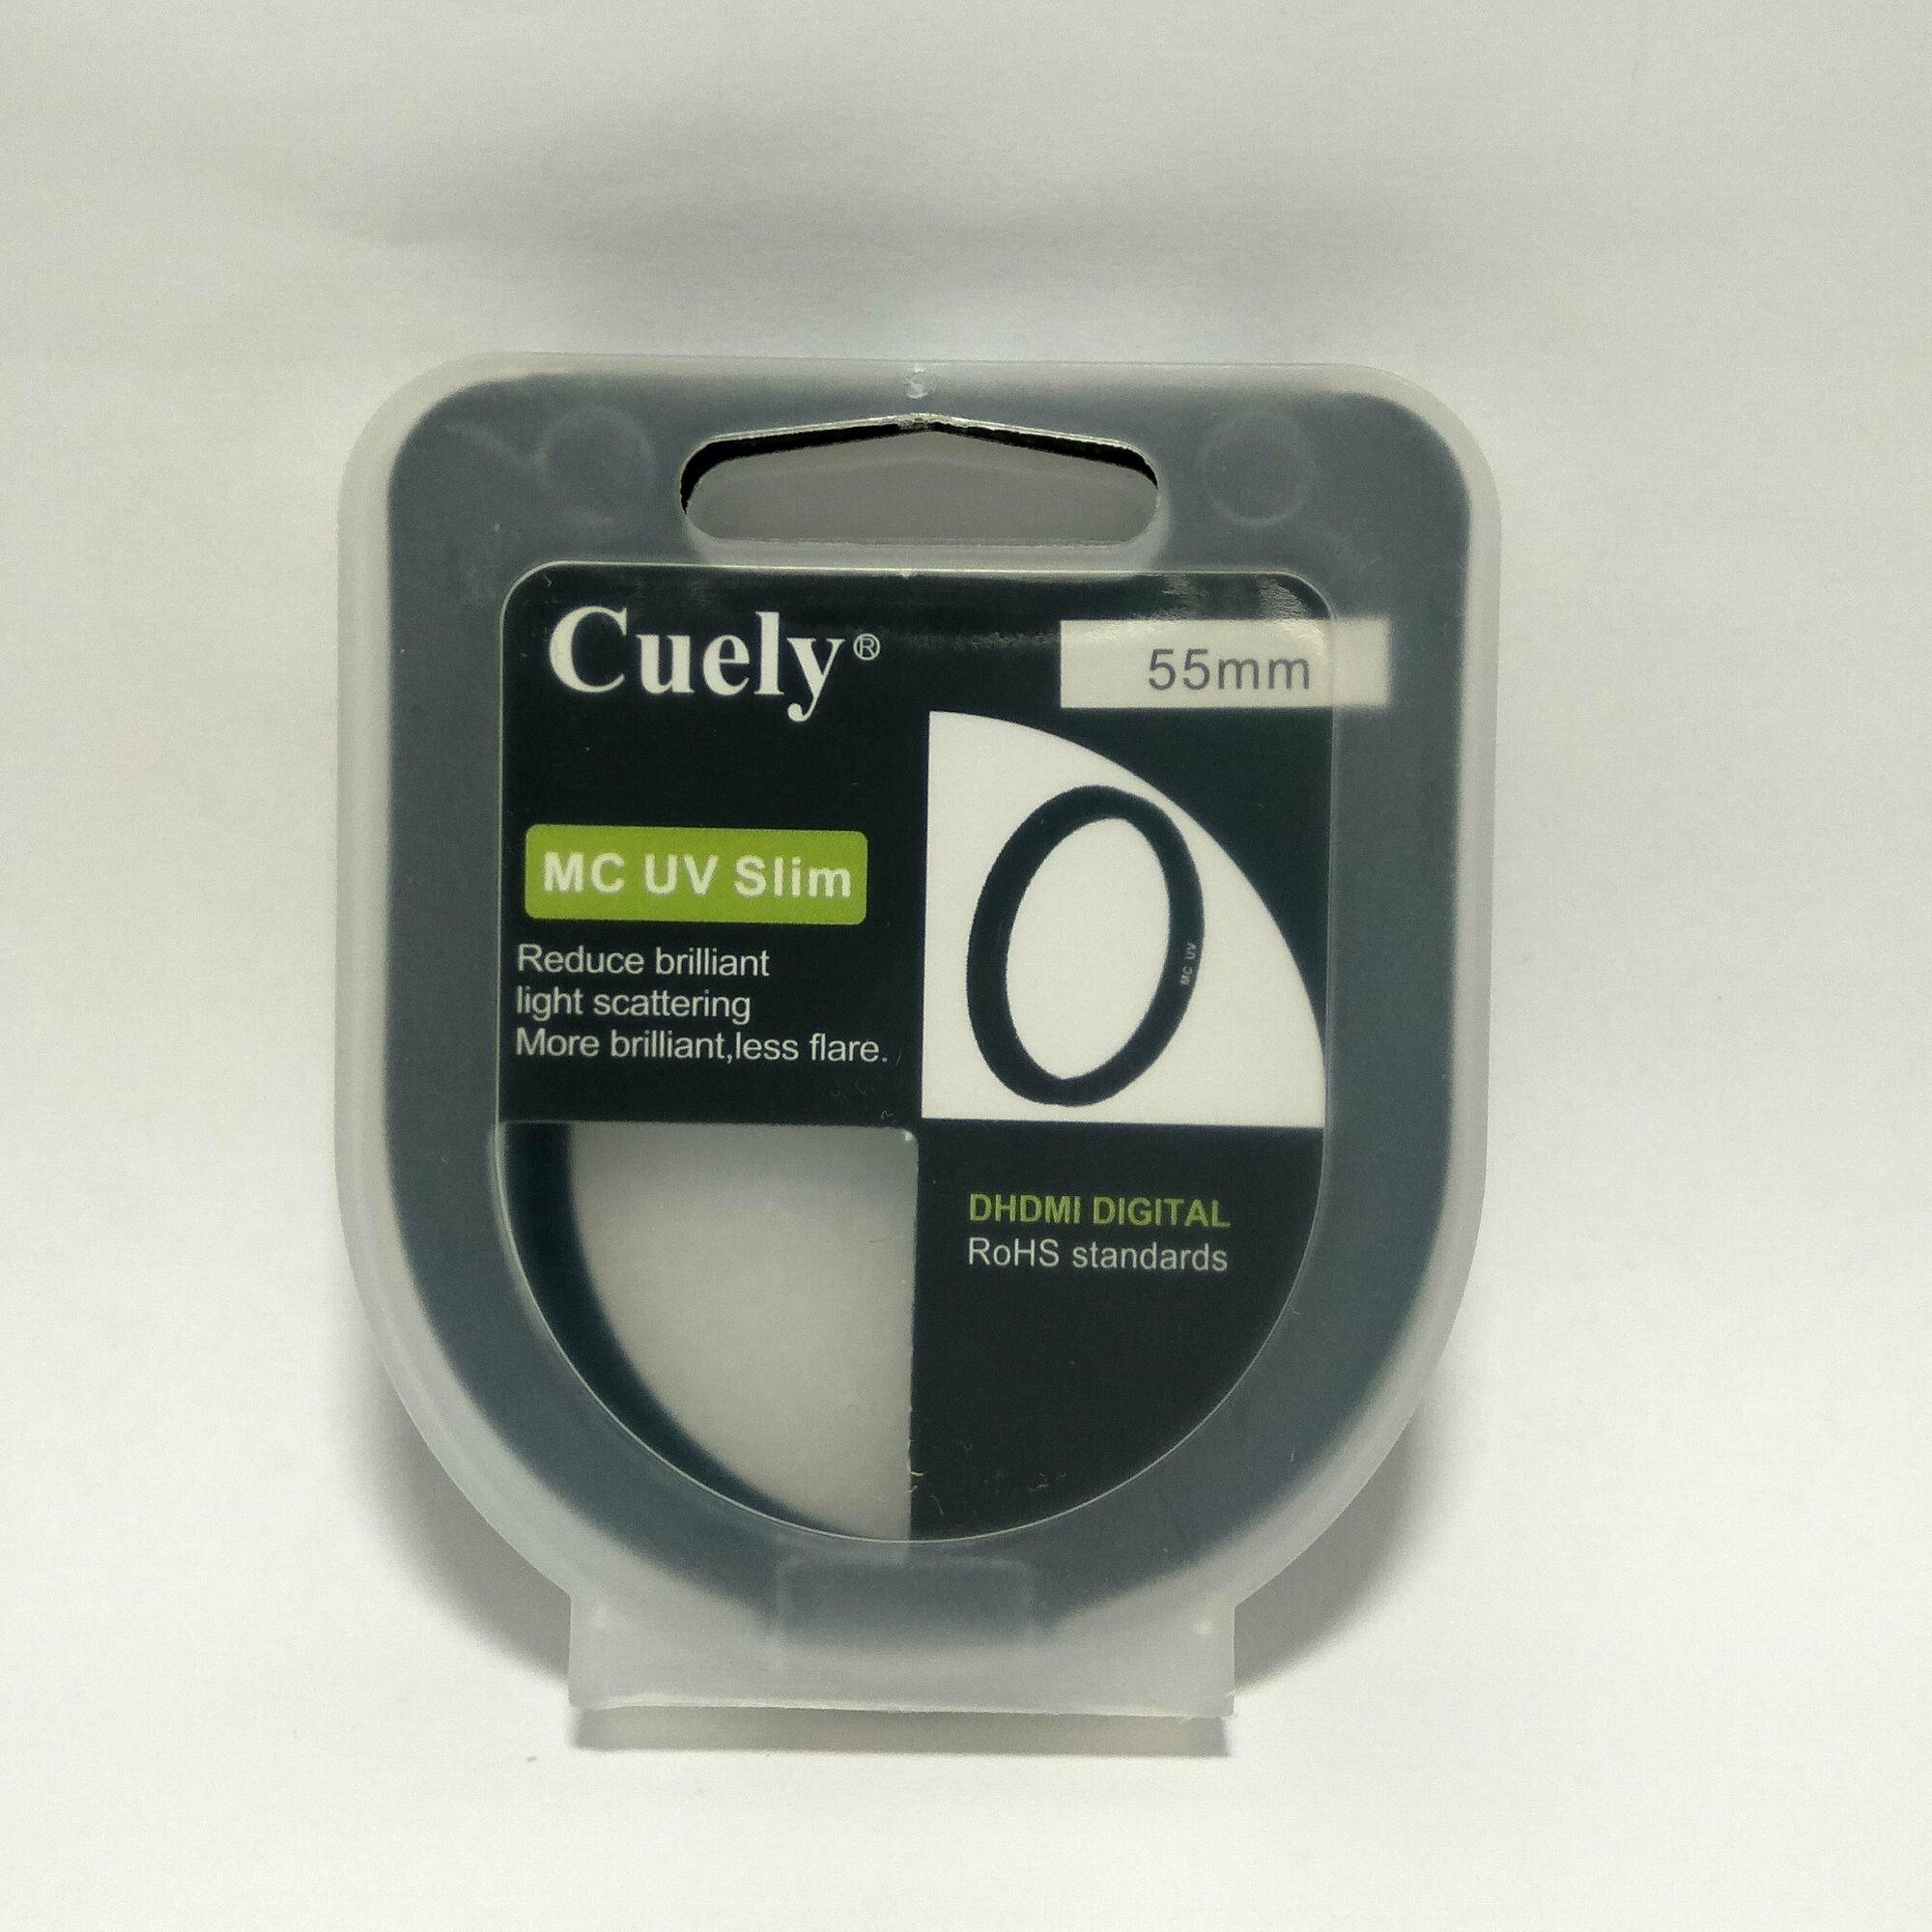 Ультрафиолетовый фильтр 55 мм, светофильтр Cuely MC UV Slim series, фильтр для объектива, для фотокамер